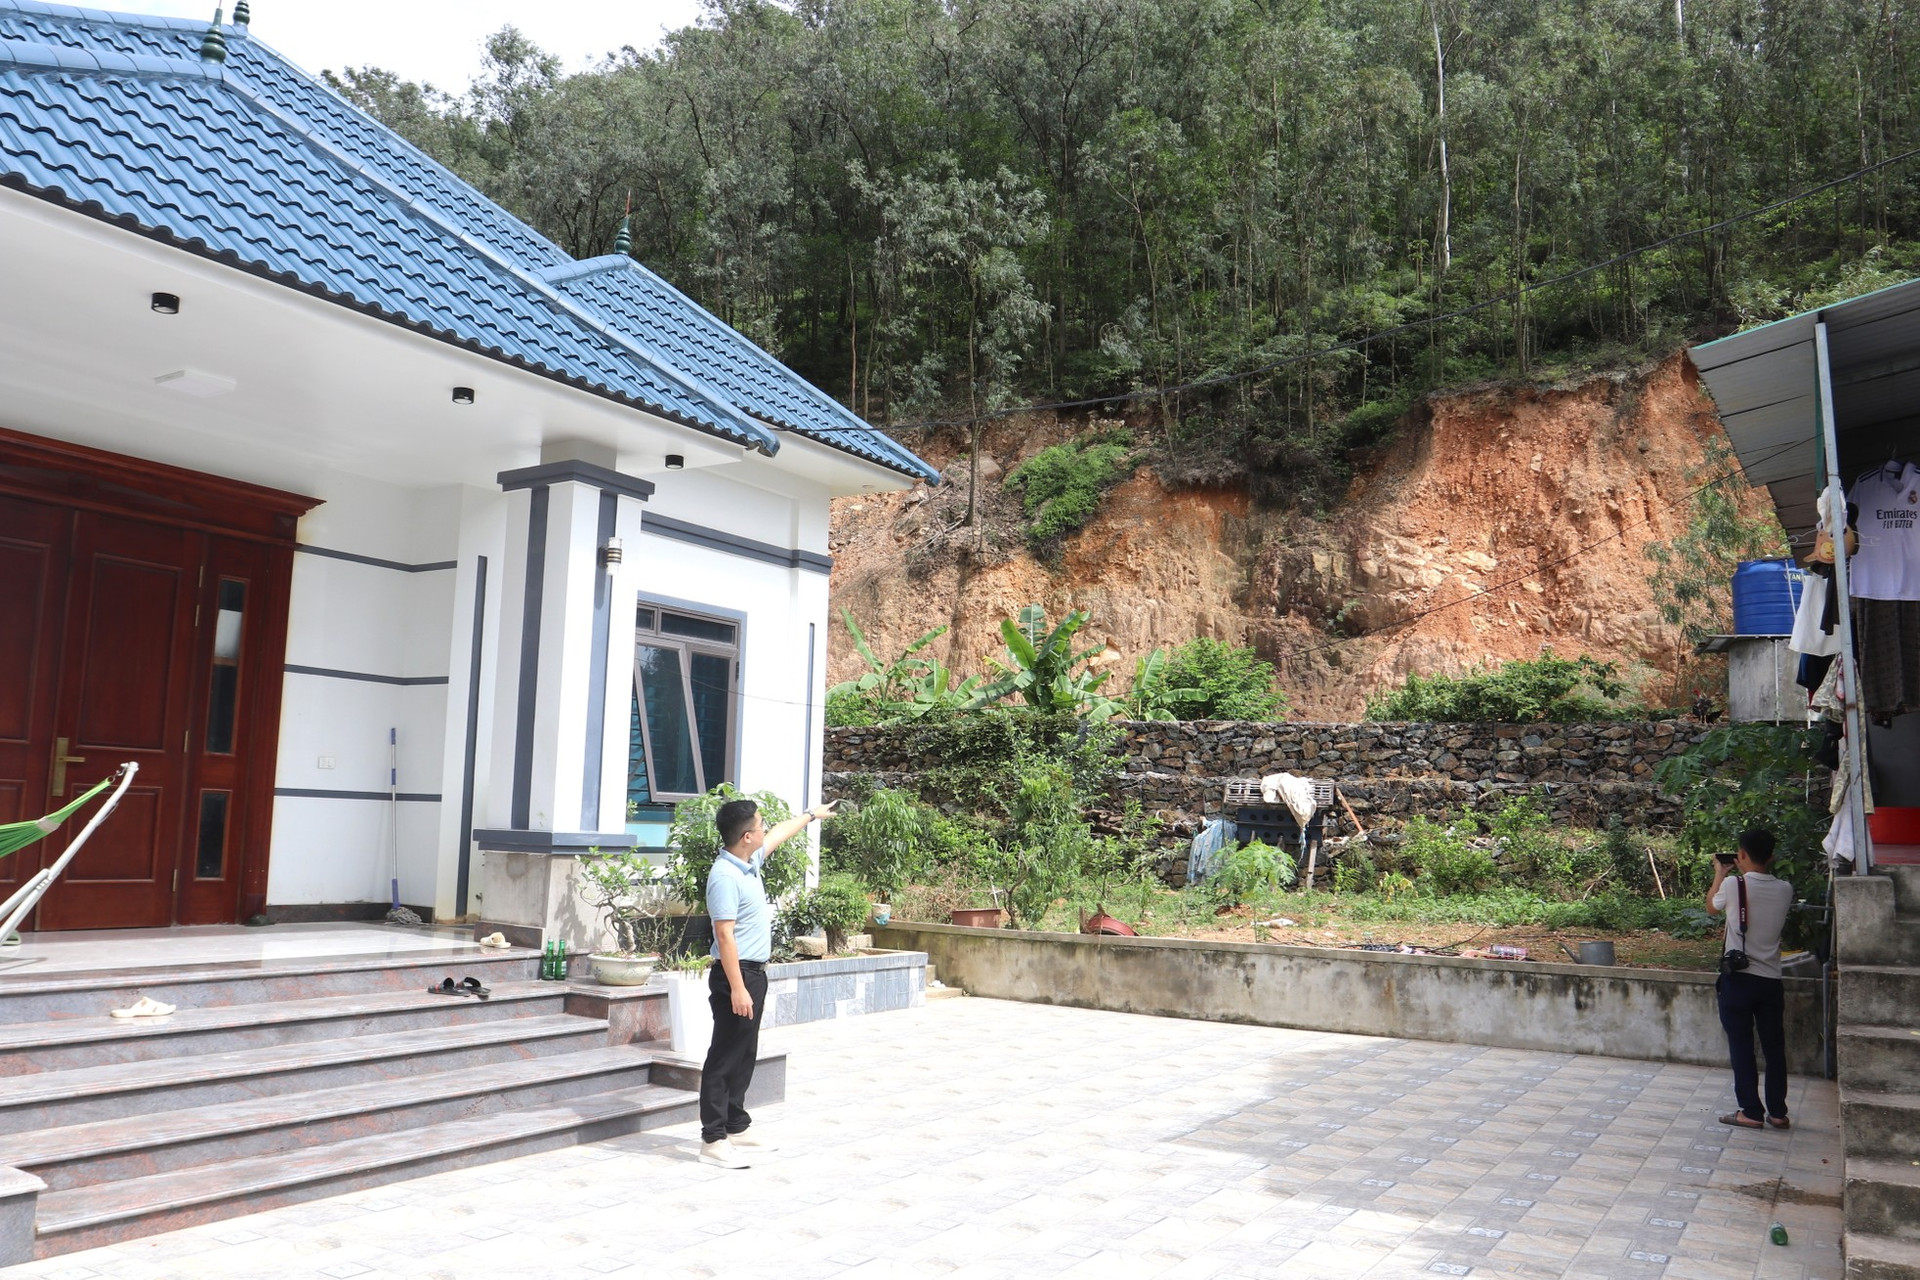 Núi nứt đe dọa sập ở Nghệ An, hàng trăm hộ dân sống trong sợ hãi ảnh 12